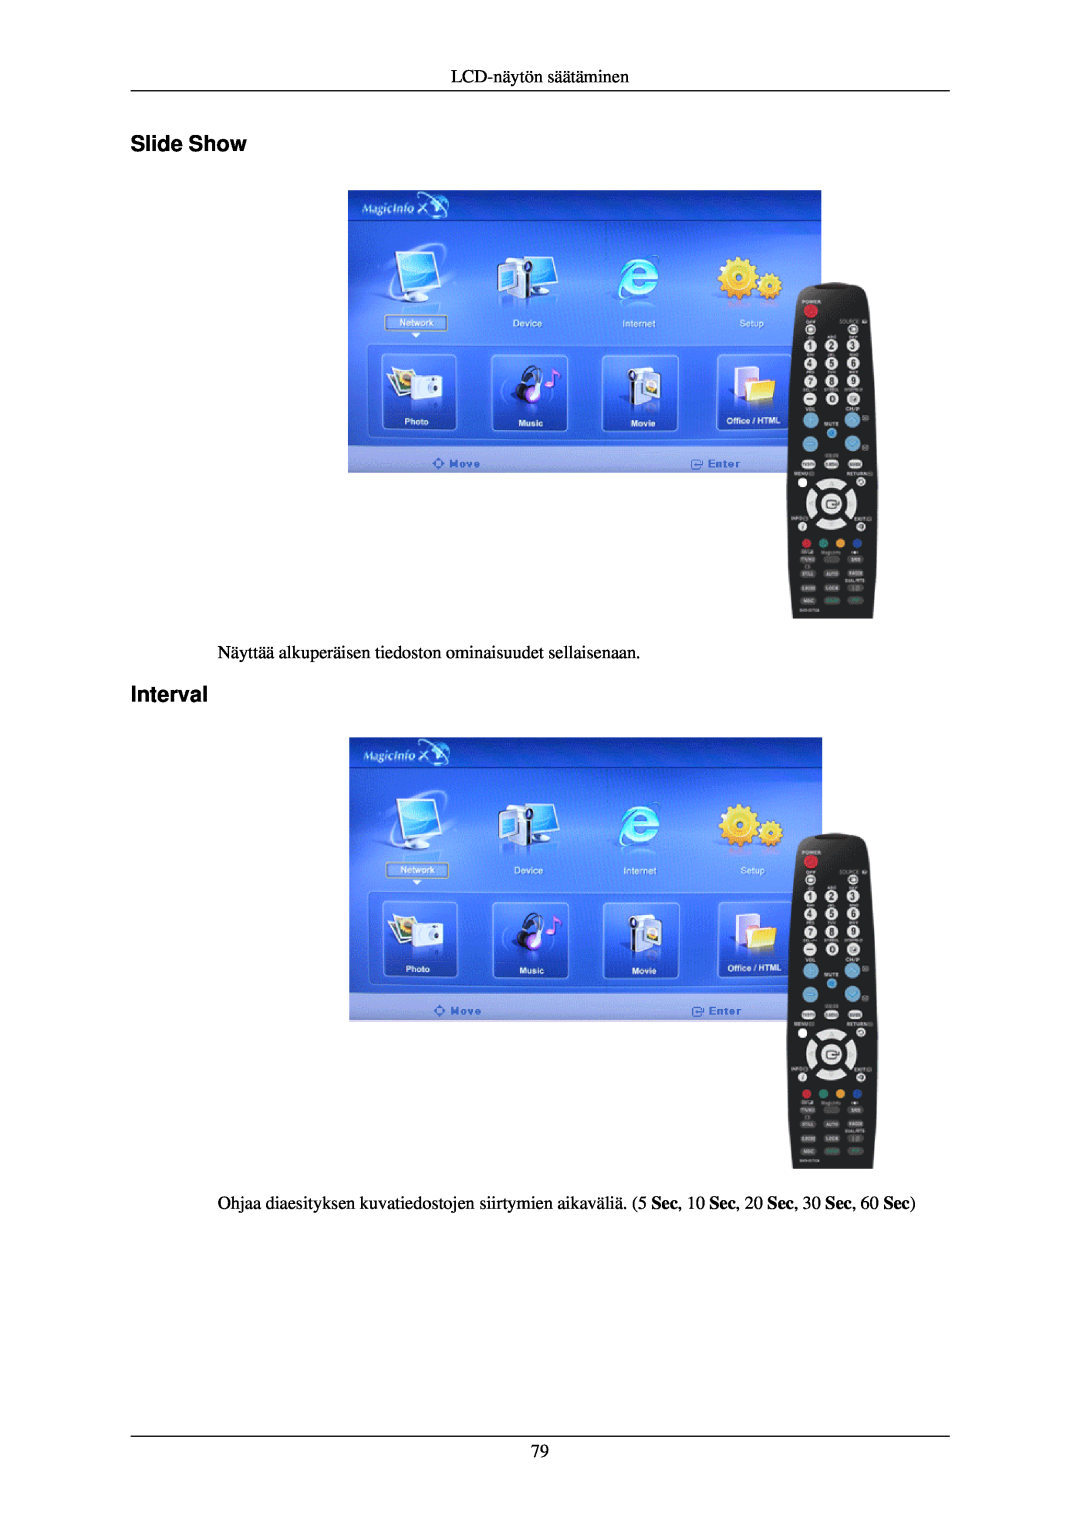 Samsung LH46TCUMBG/EN, LH40TCUMBG/EN, LH46TCUMBC/EN, LH40TCQMBG/EN, LH40TCUMBC/EN Slide Show, Interval, LCD-näytön säätäminen 